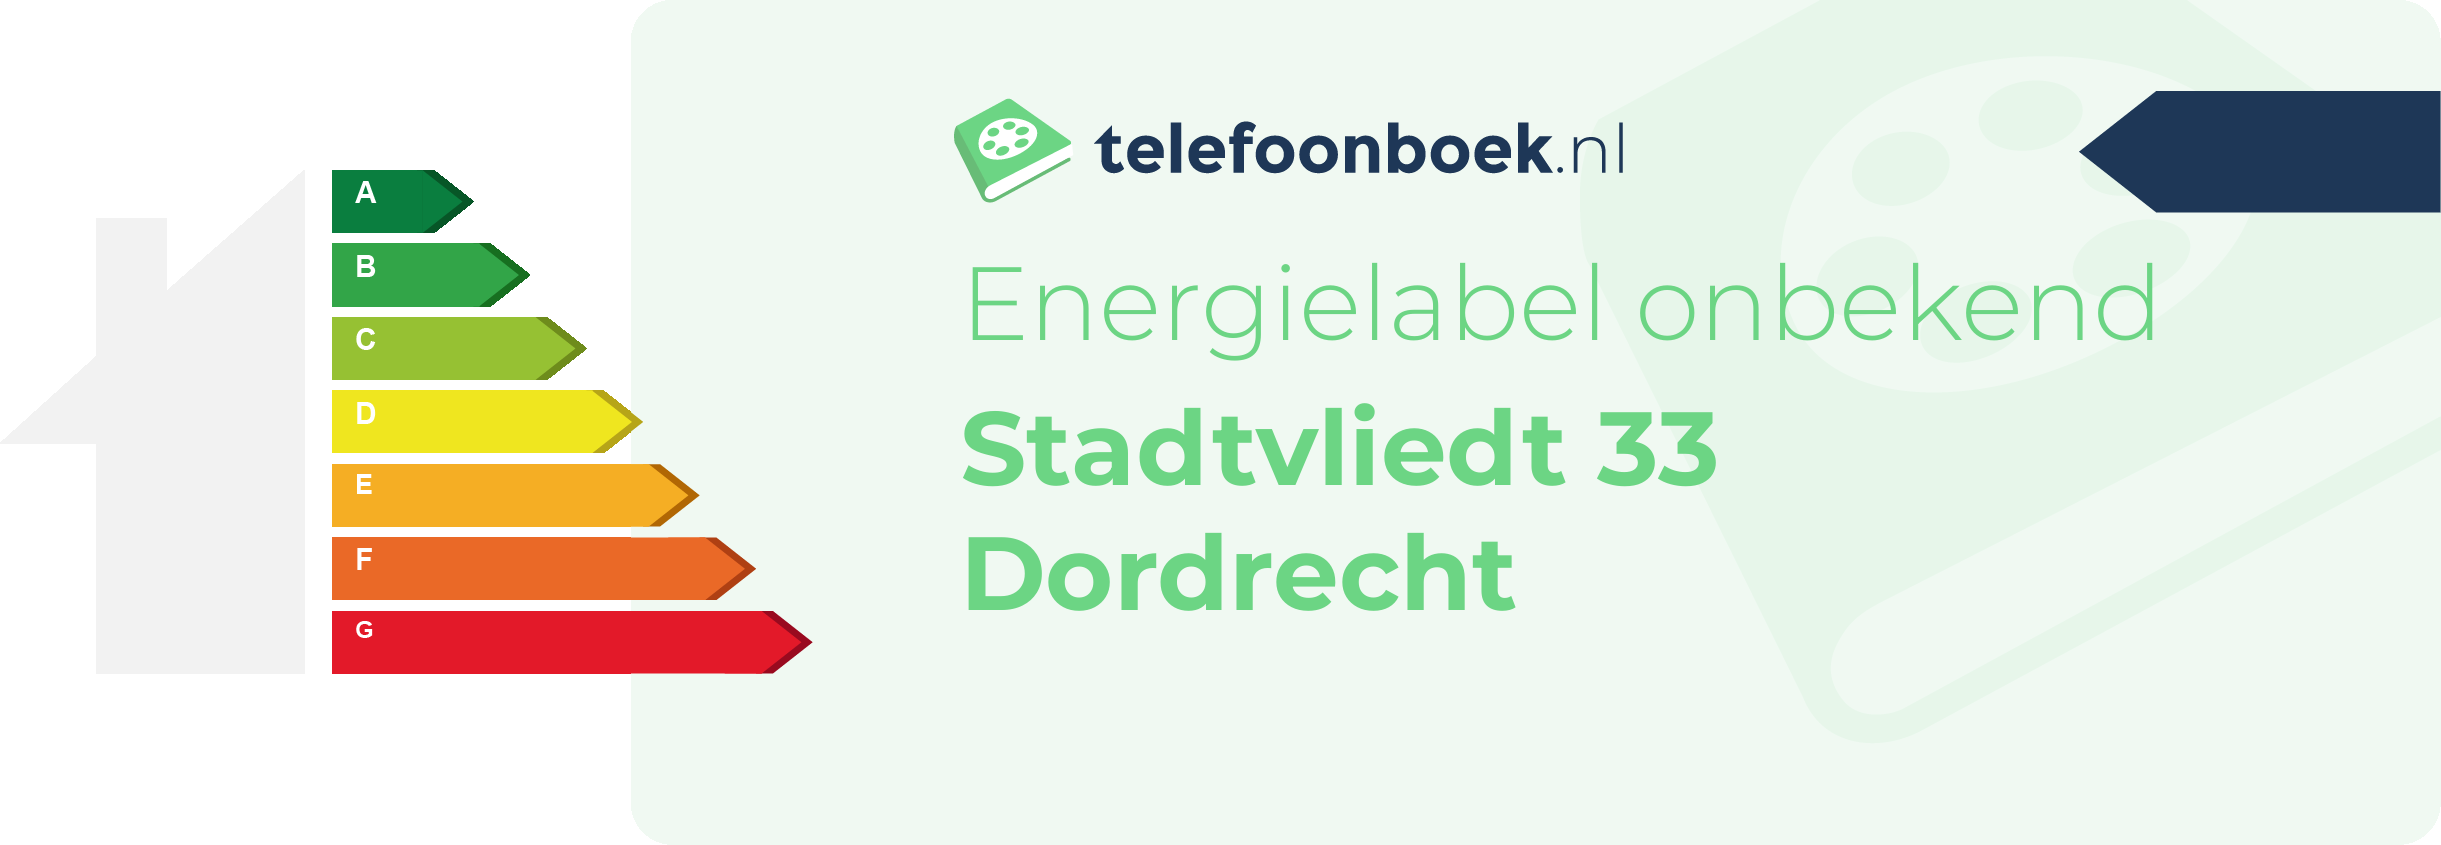 Energielabel Stadtvliedt 33 Dordrecht